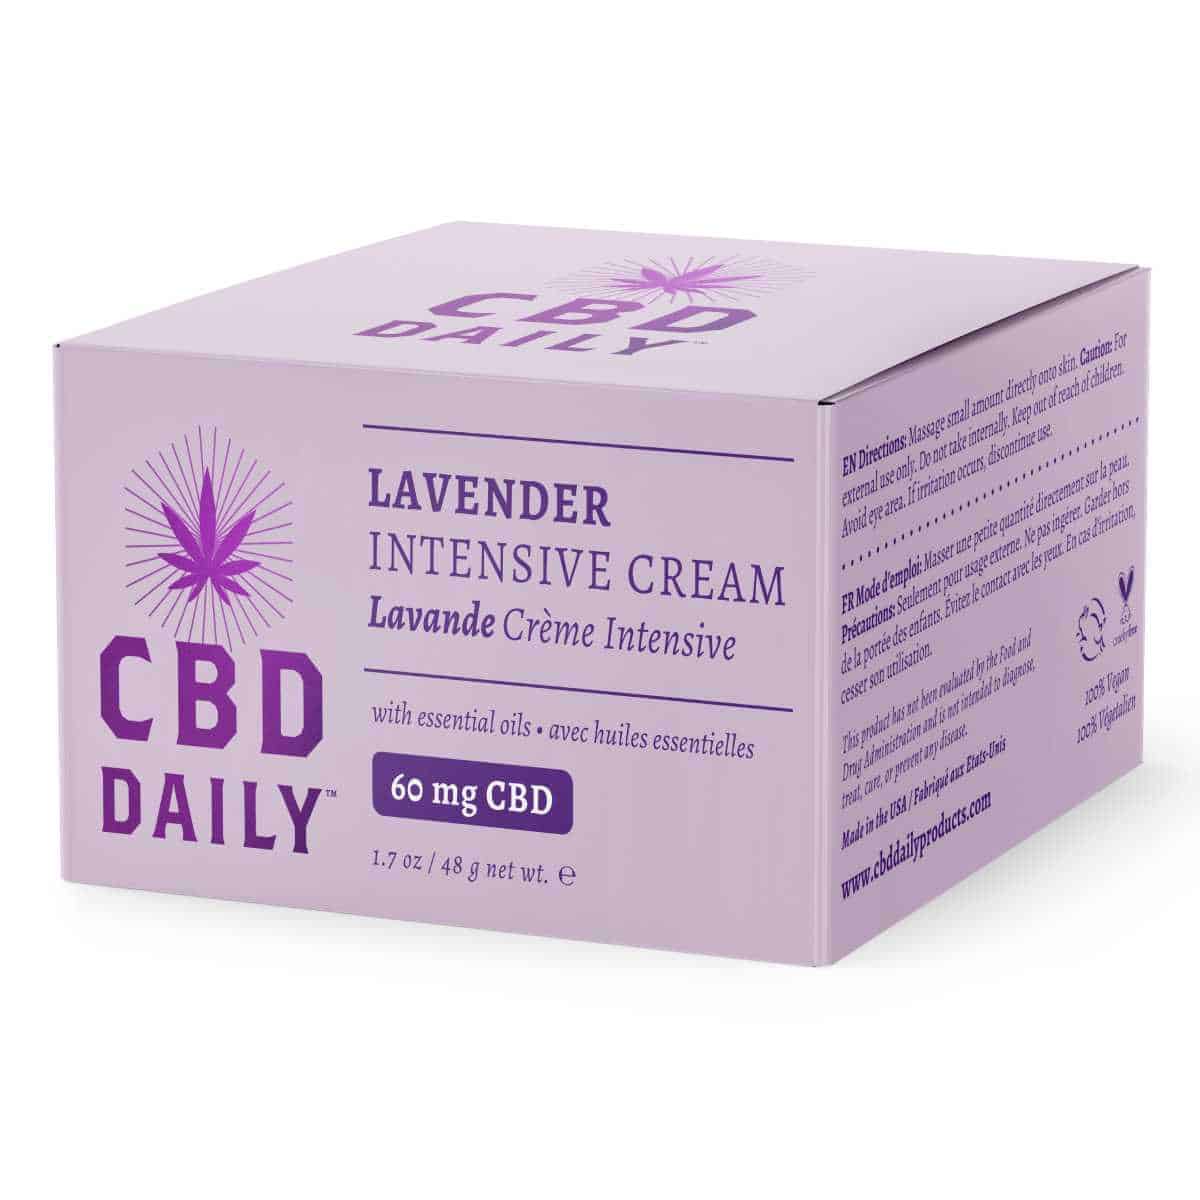 CBD Daily Intensive Cream Lavender Box View | Buy CBD lavender | Buy Lavender CBD Cream Online | CBD Daily since 1996